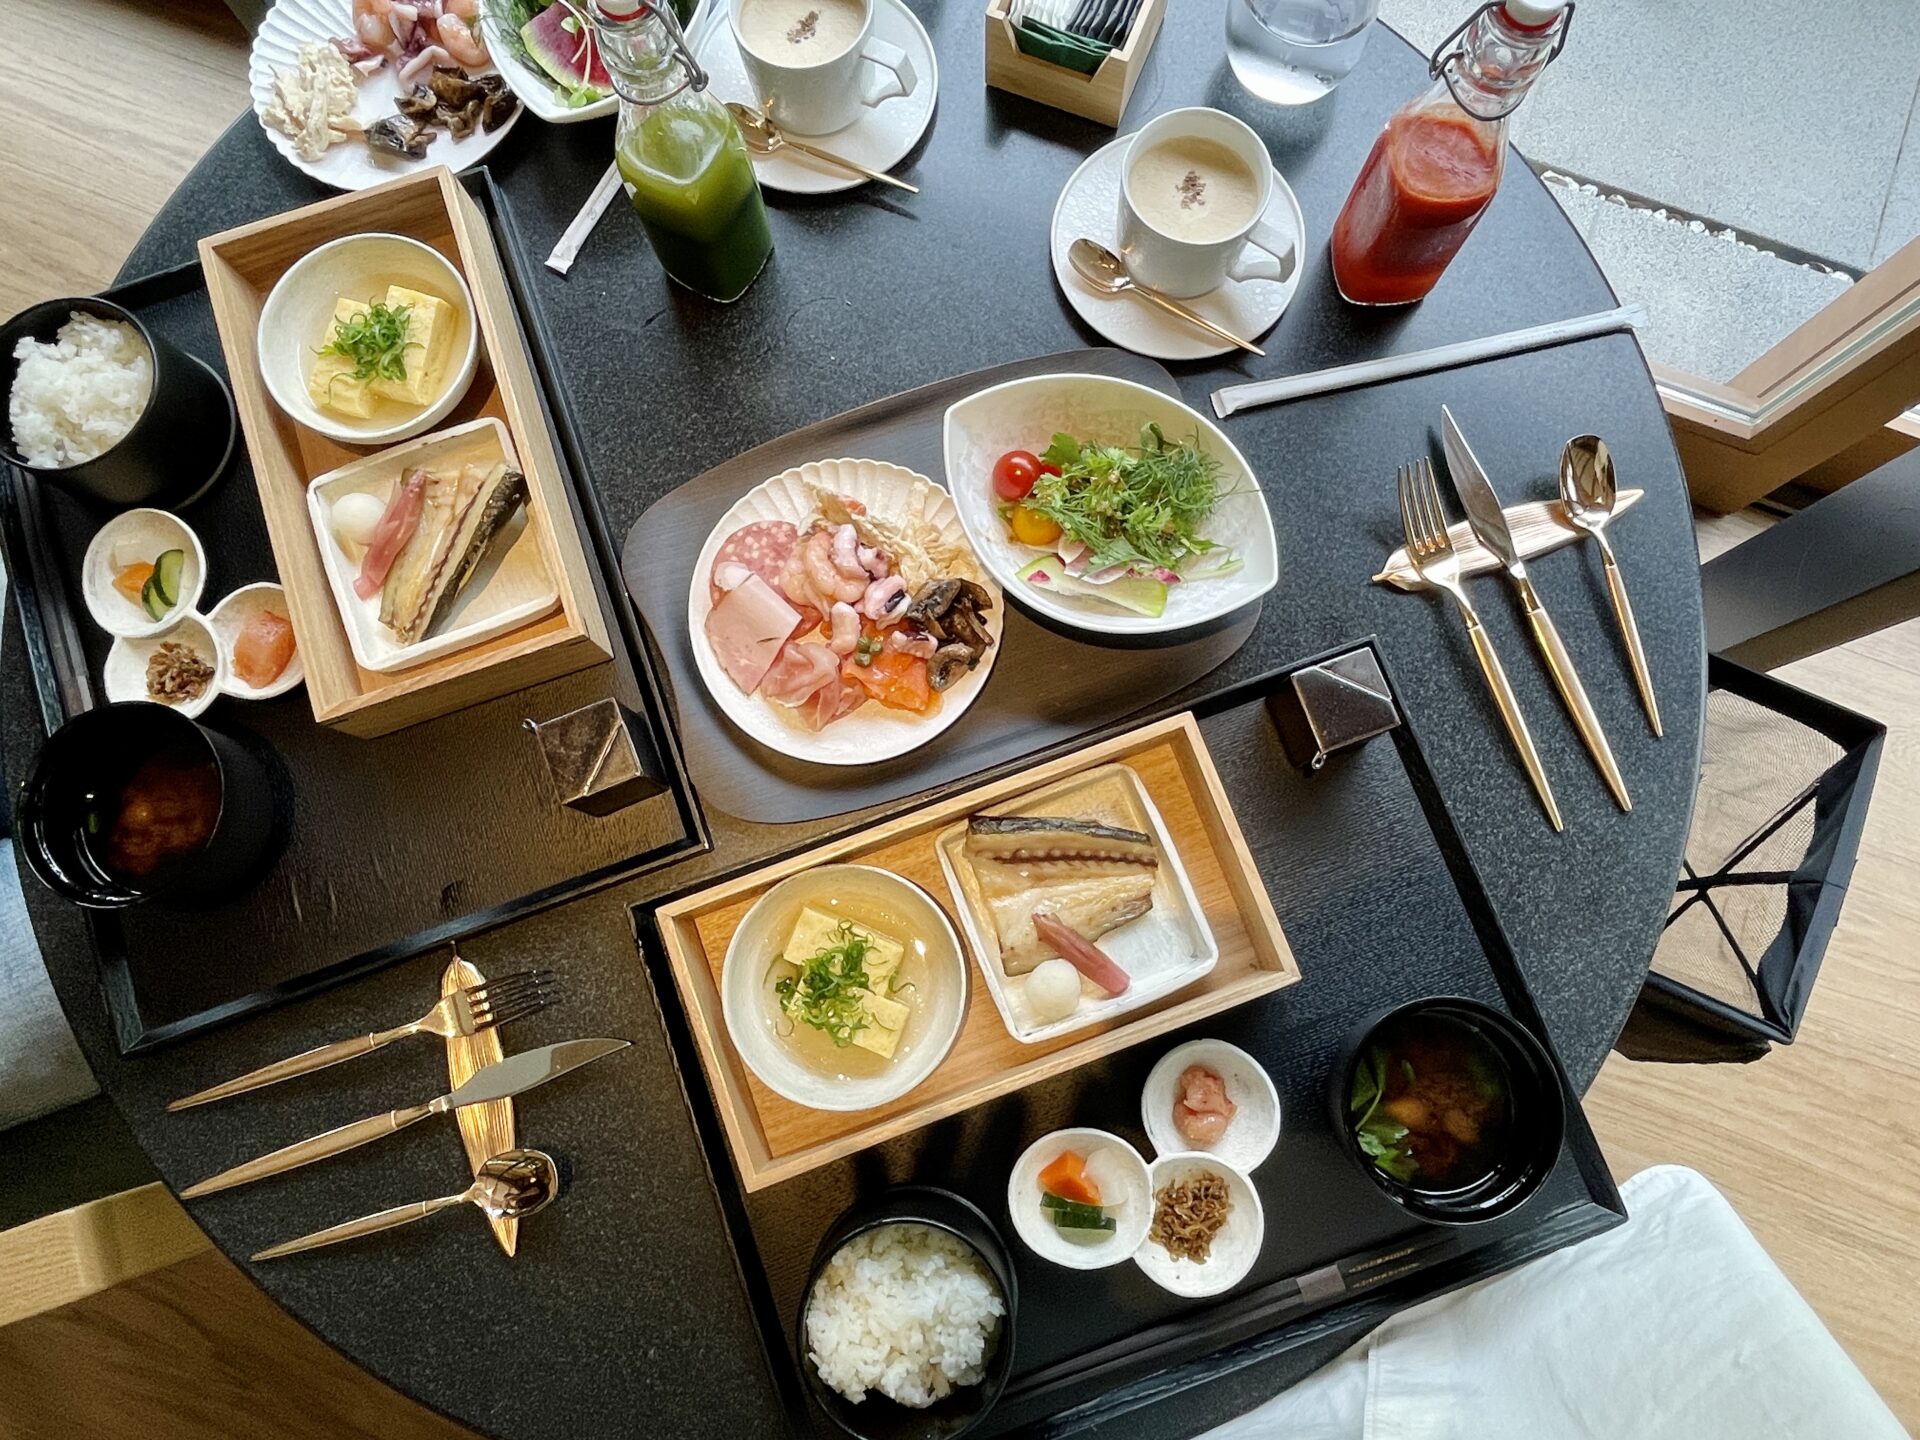 「ロク京都」朝食 セミブッフェ内容